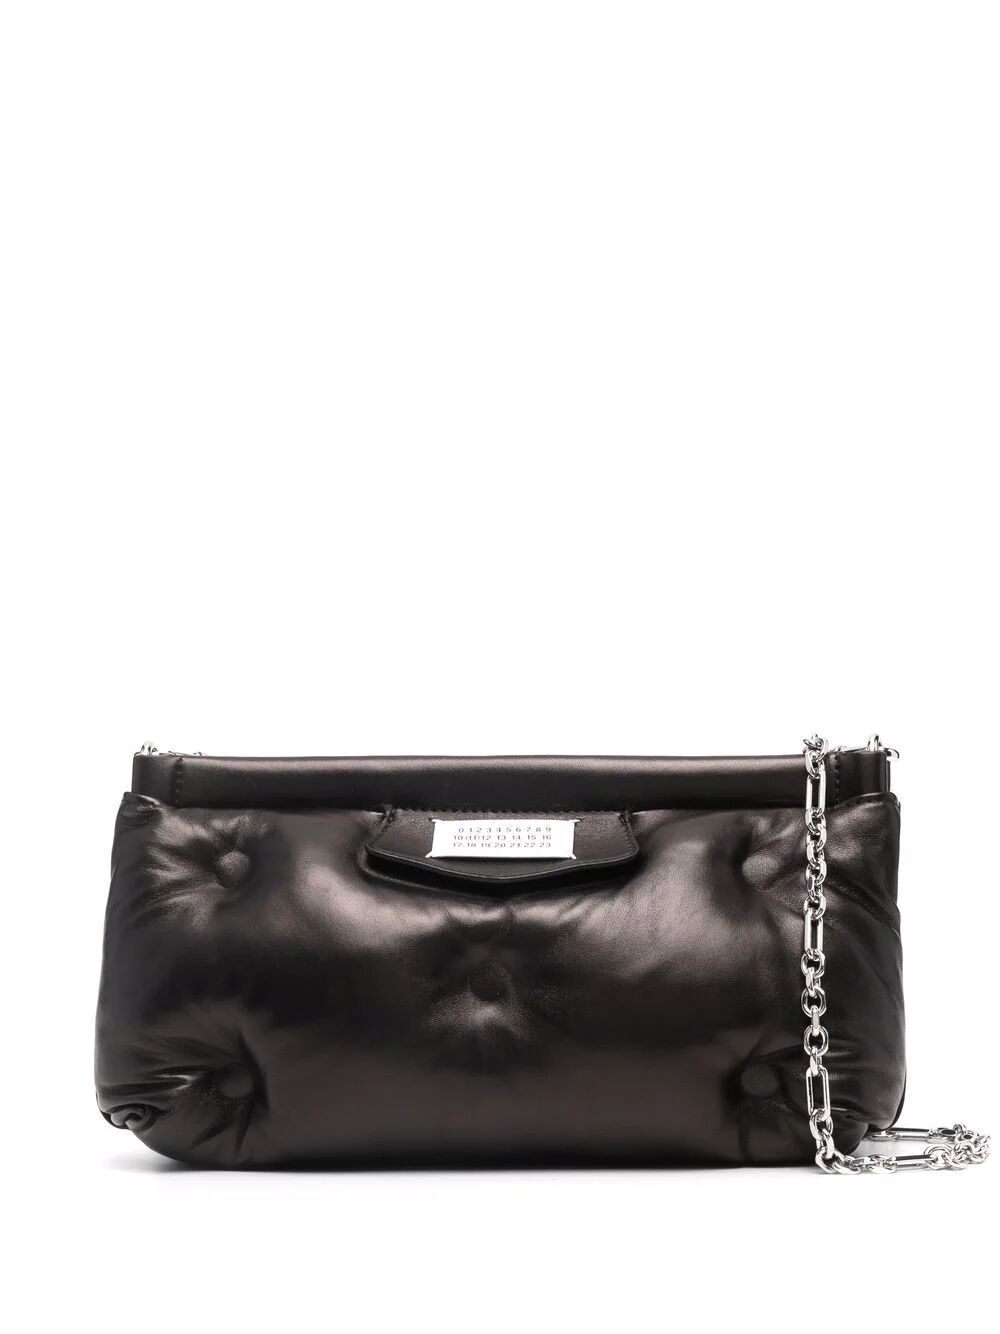 Maison Margiela Small Glam Slam Bag In Black